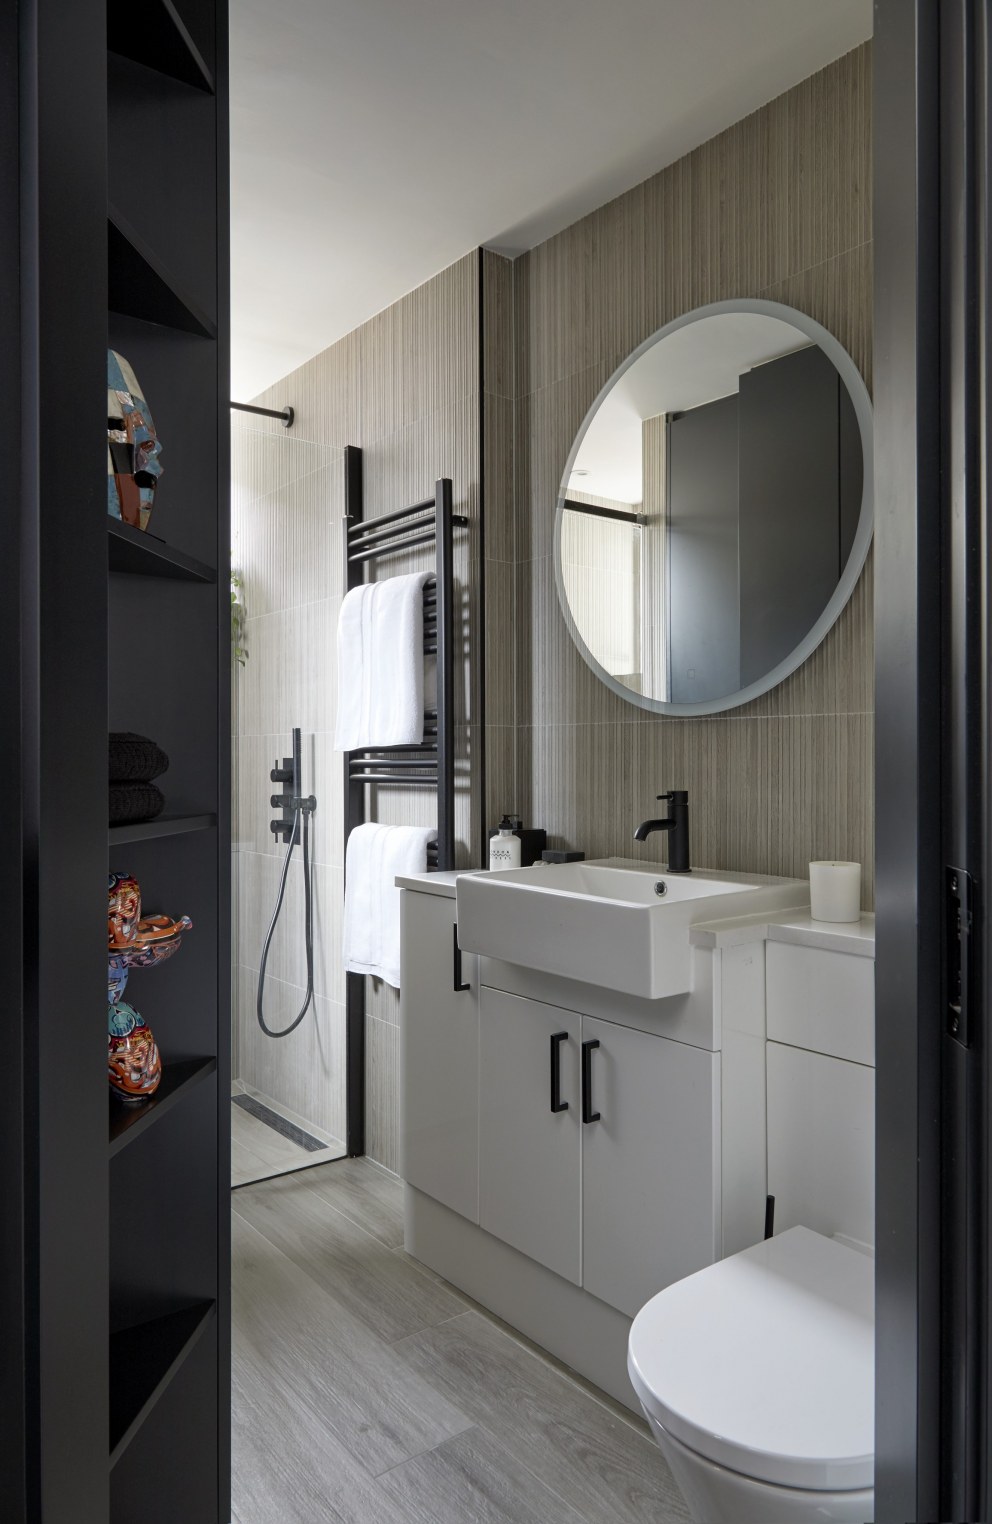 Elegant apartment living | The Shower Room | Interior Designers